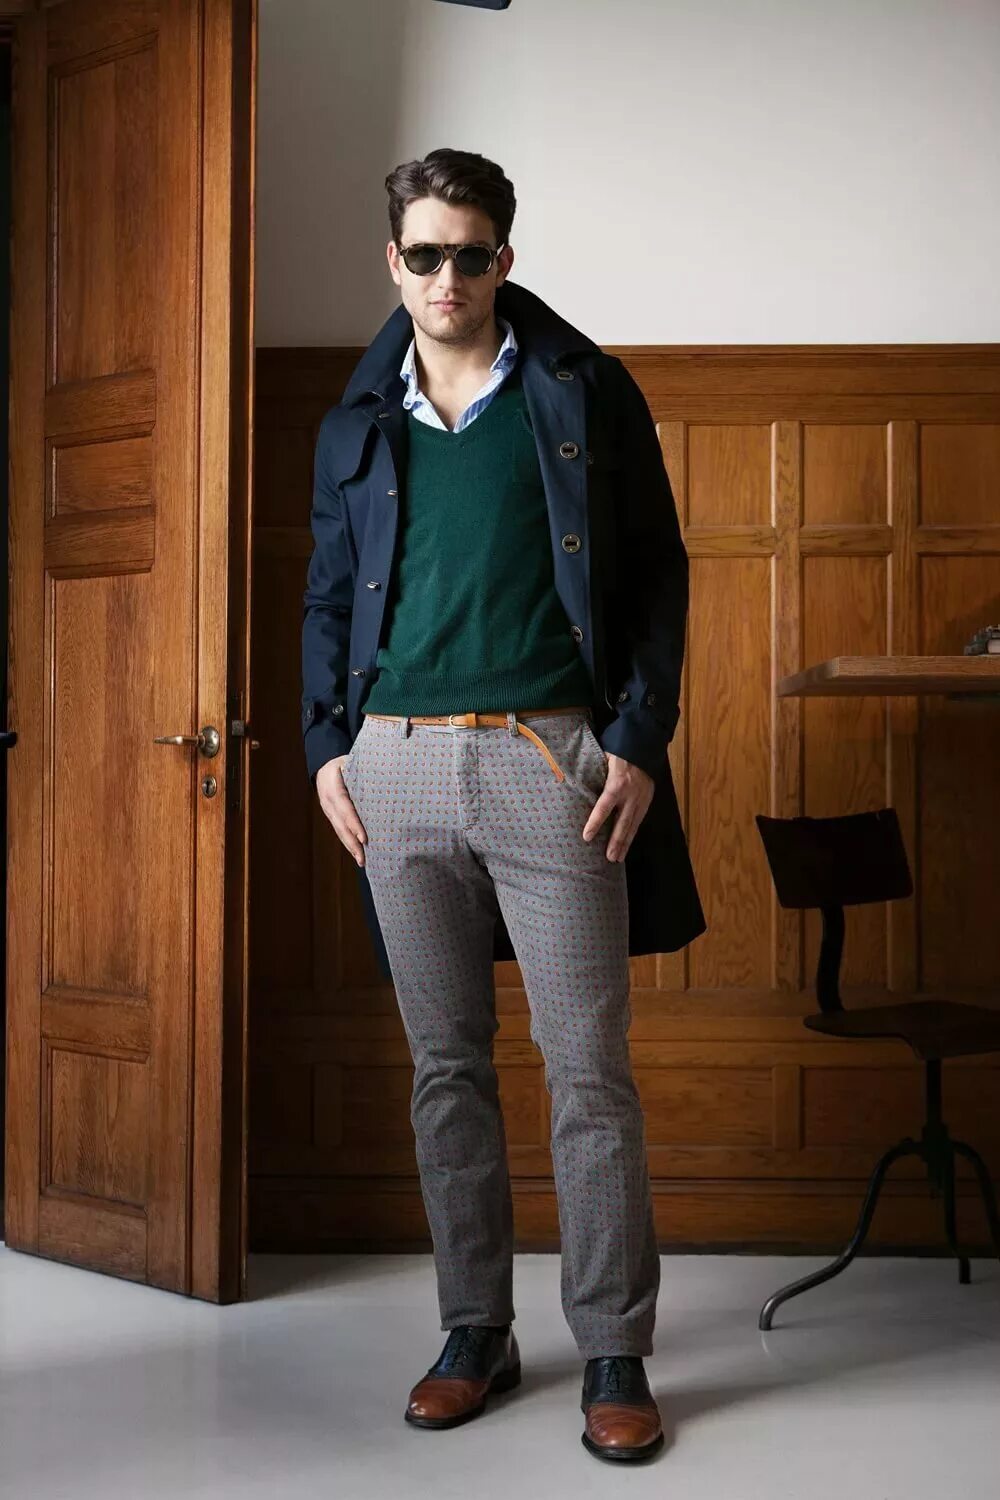 Брюки Gant by Michael Bastian 2013. Gant Michael Bastian очки. Стильная мужская одежда. Стиль для высоких мужчин.